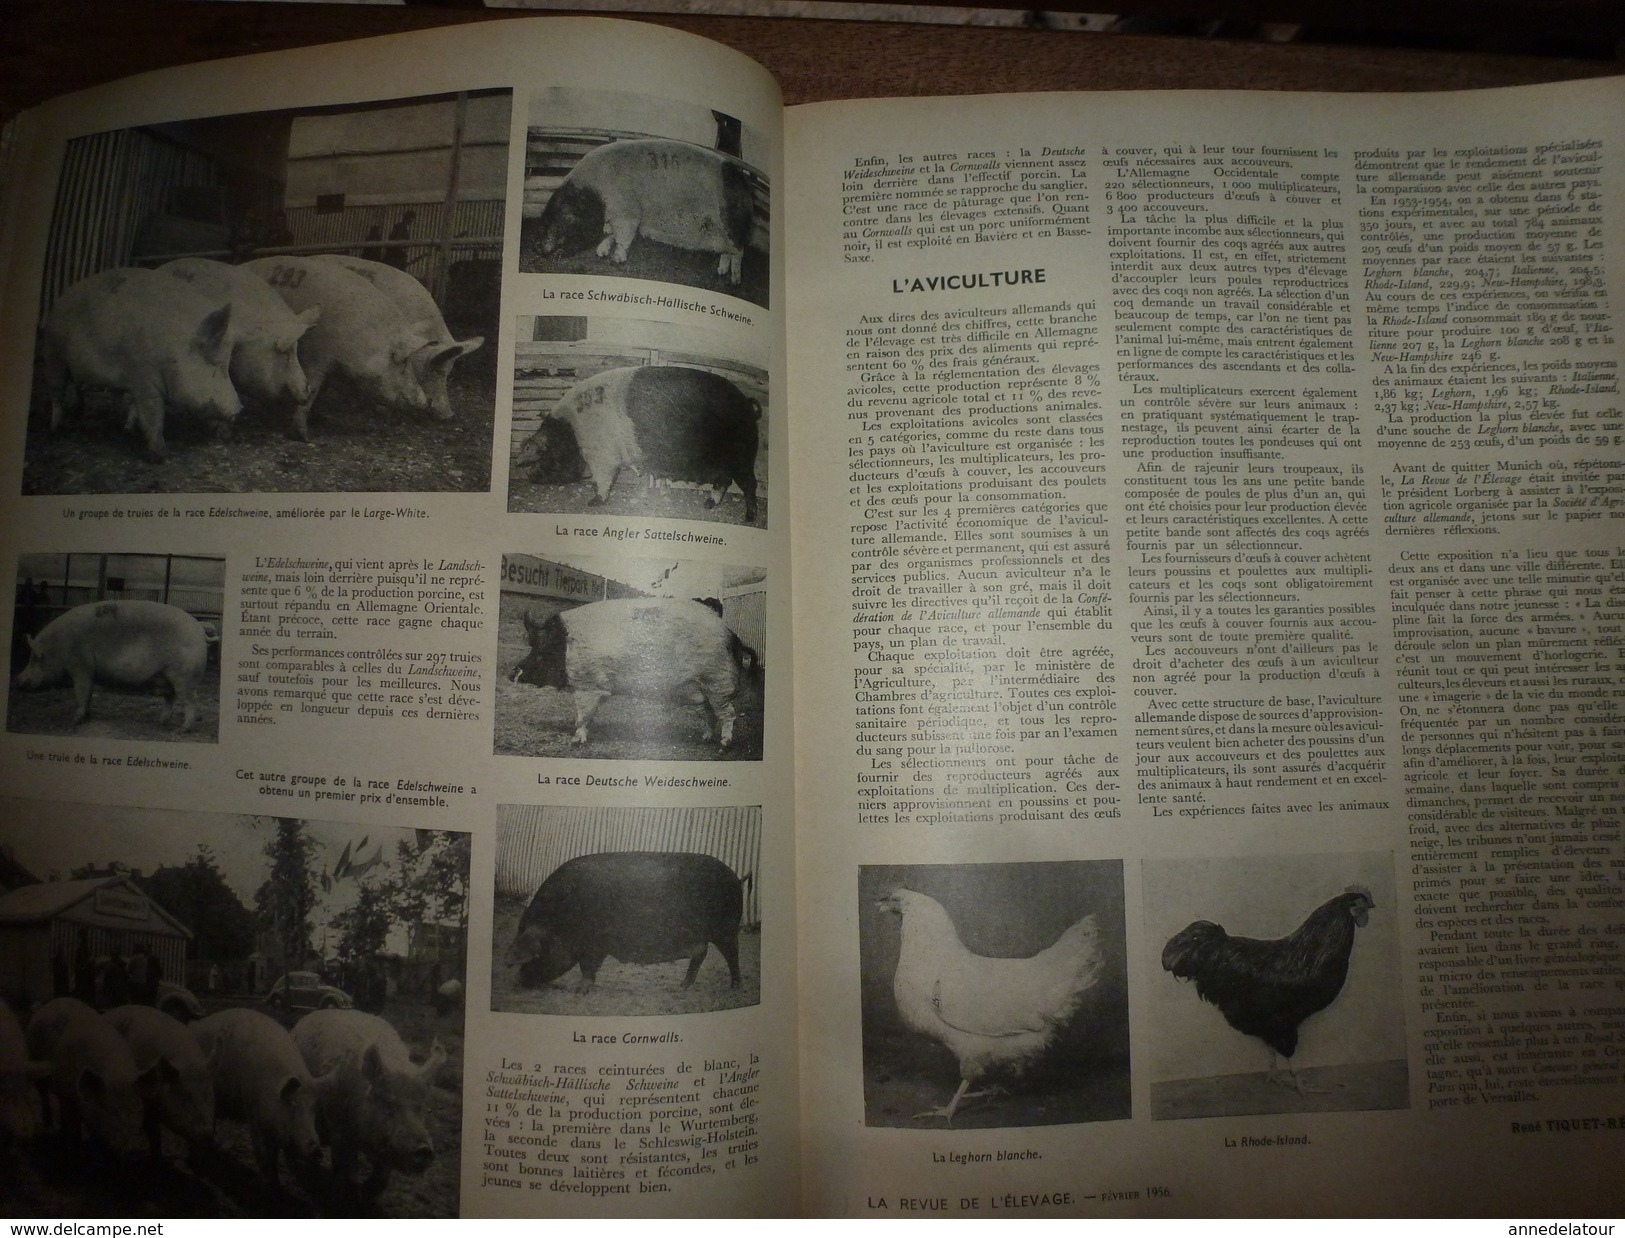 1956 LRDLE Elevage au MAROC; En Allemagne; Les lapins; Dindonneaux ; Aviculture; La gastronomie; etc